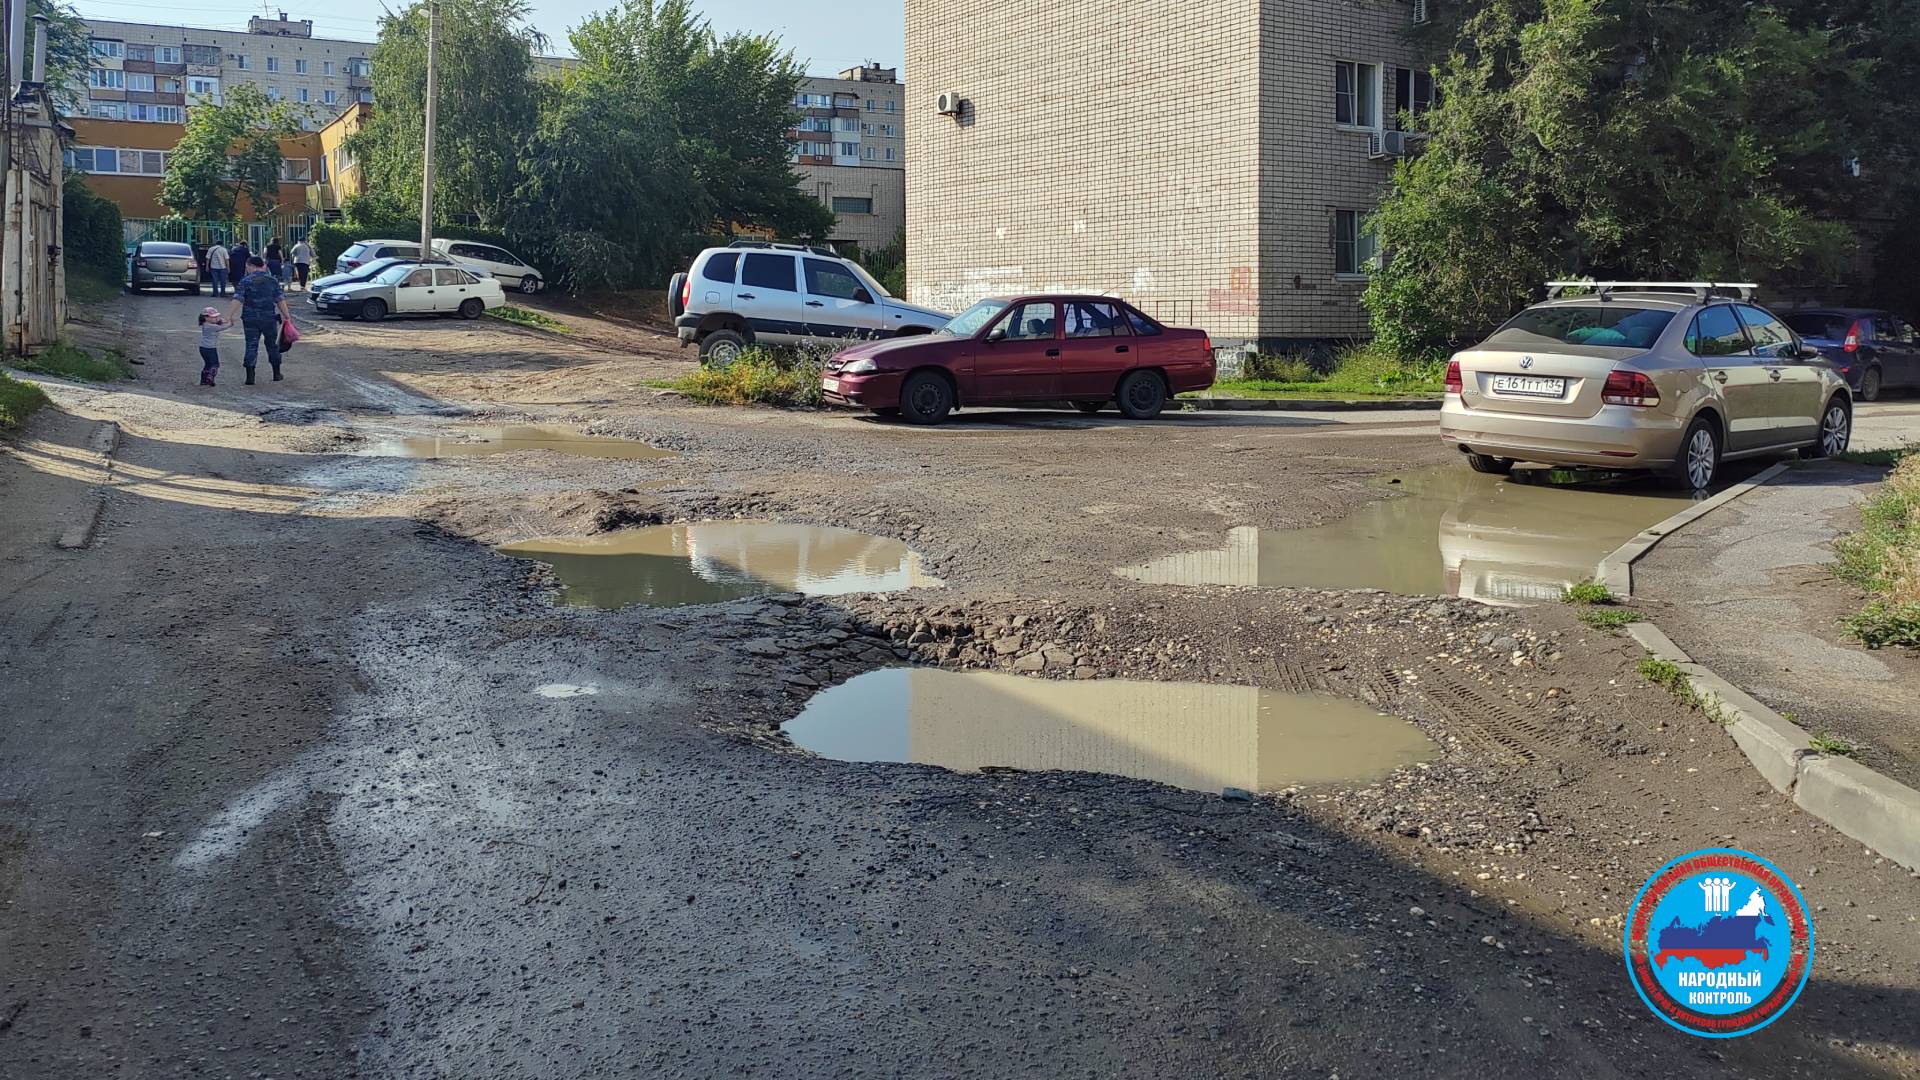 Ямы до 25 см глубиной на дороге в Волгограде